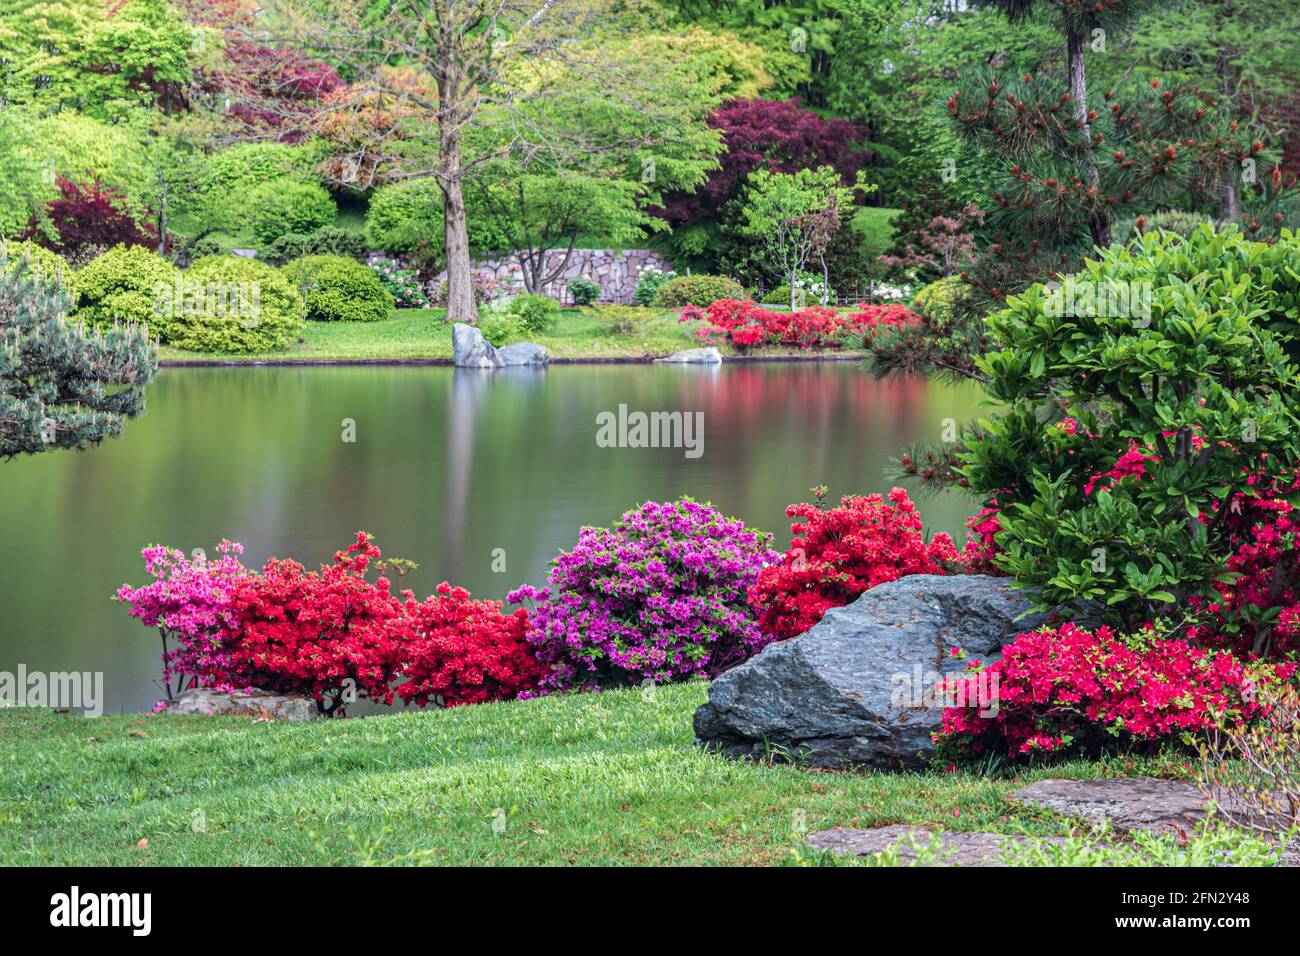 Jardin japonais, dans le jardin botanique du Missouri, St. Louis, Missouri, États-Unis. Réflexion d'arbres et de plantes dans le lac. Des fleurs rouges et roses bordent le rivage. Banque D'Images